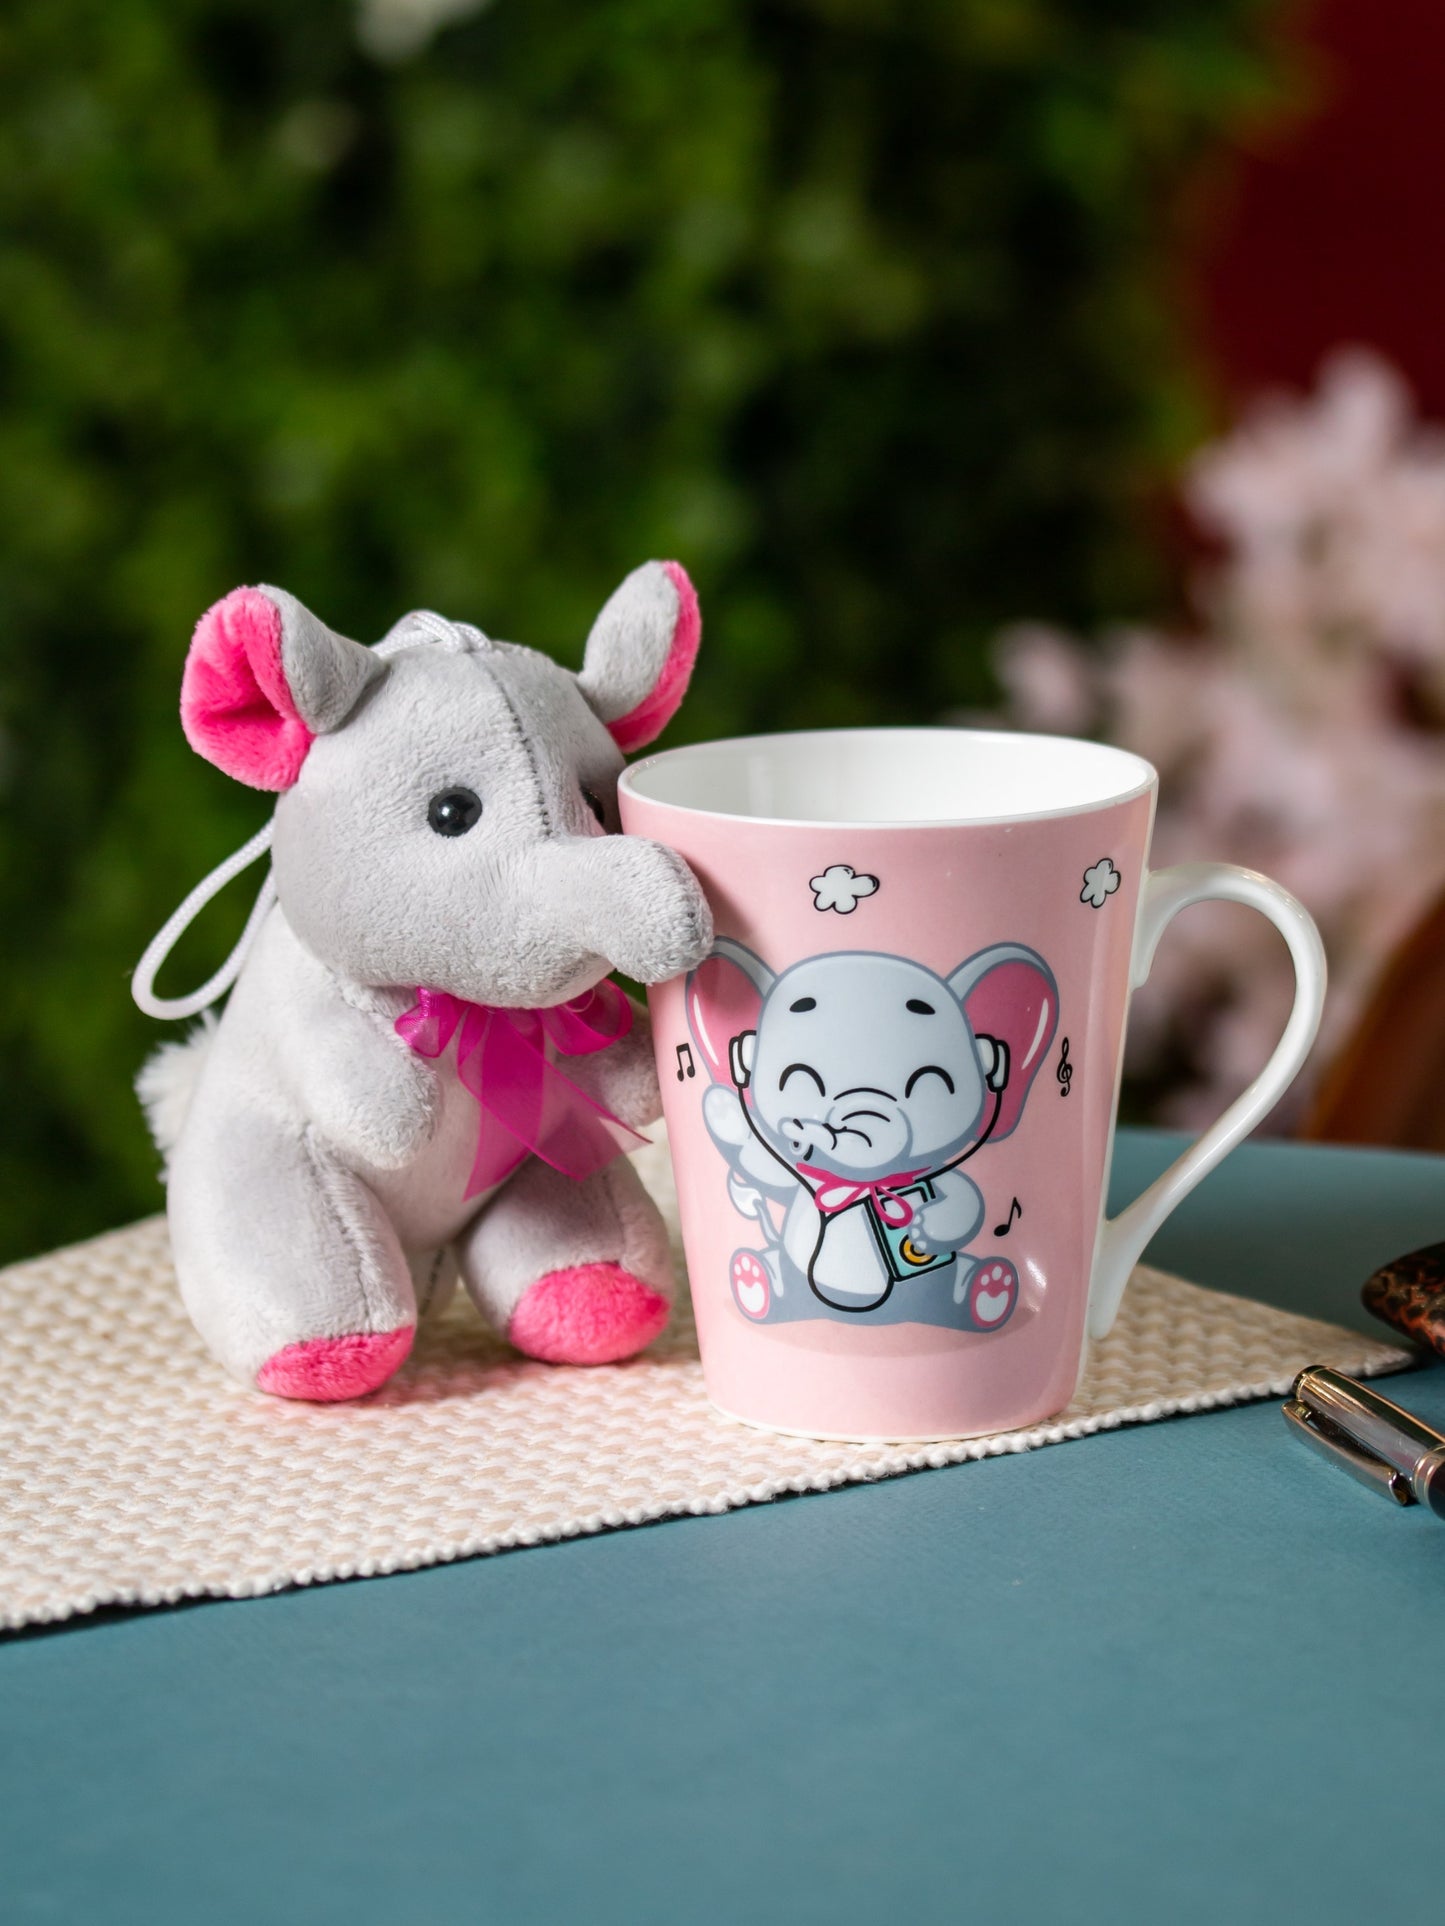 Zing Elephant Coffee & Milk Mug with Toy, 340ml, 1 Piece